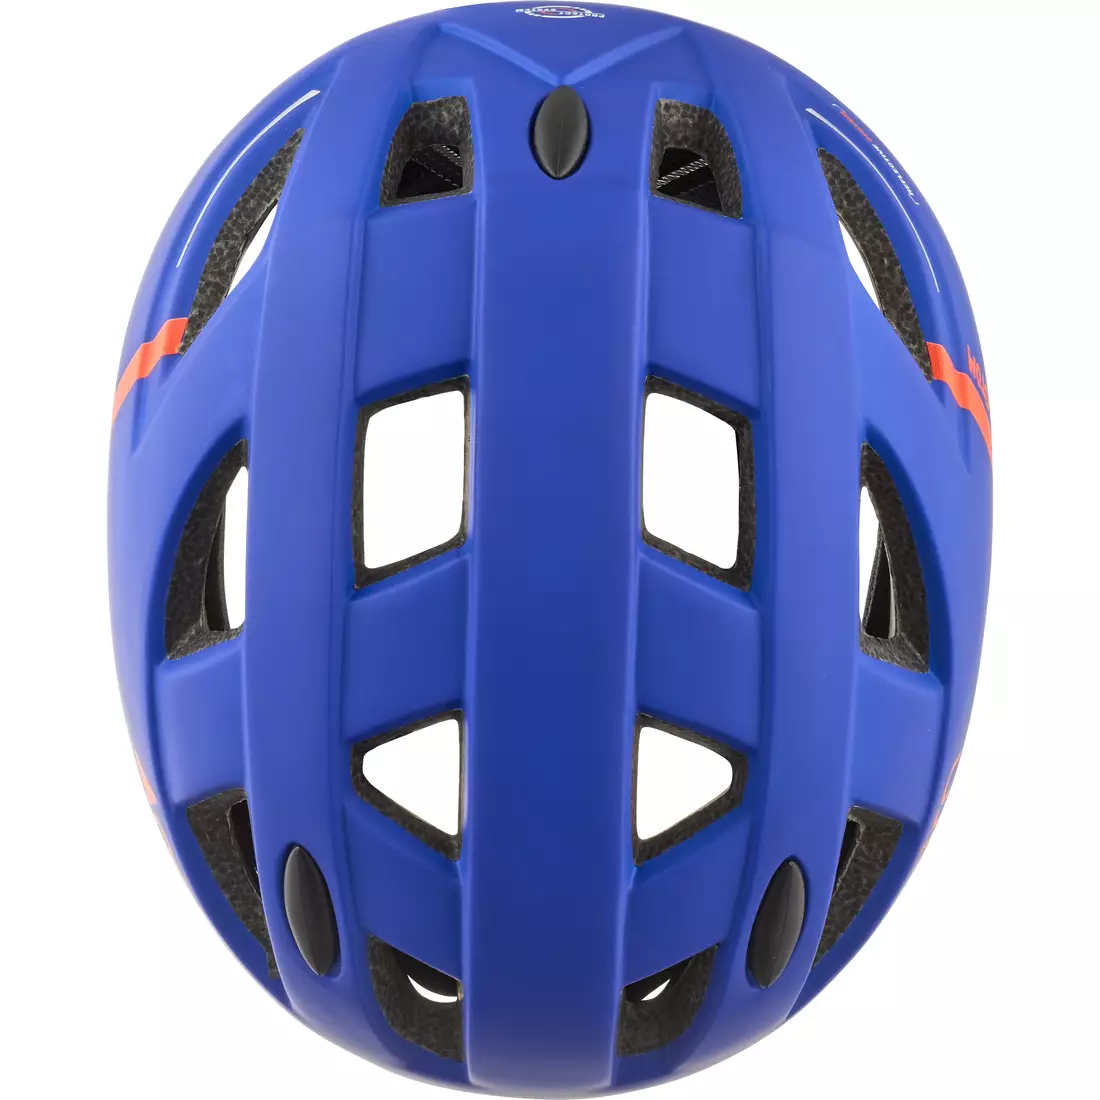 CAIRN bicycle helmet R KUSTOM blue